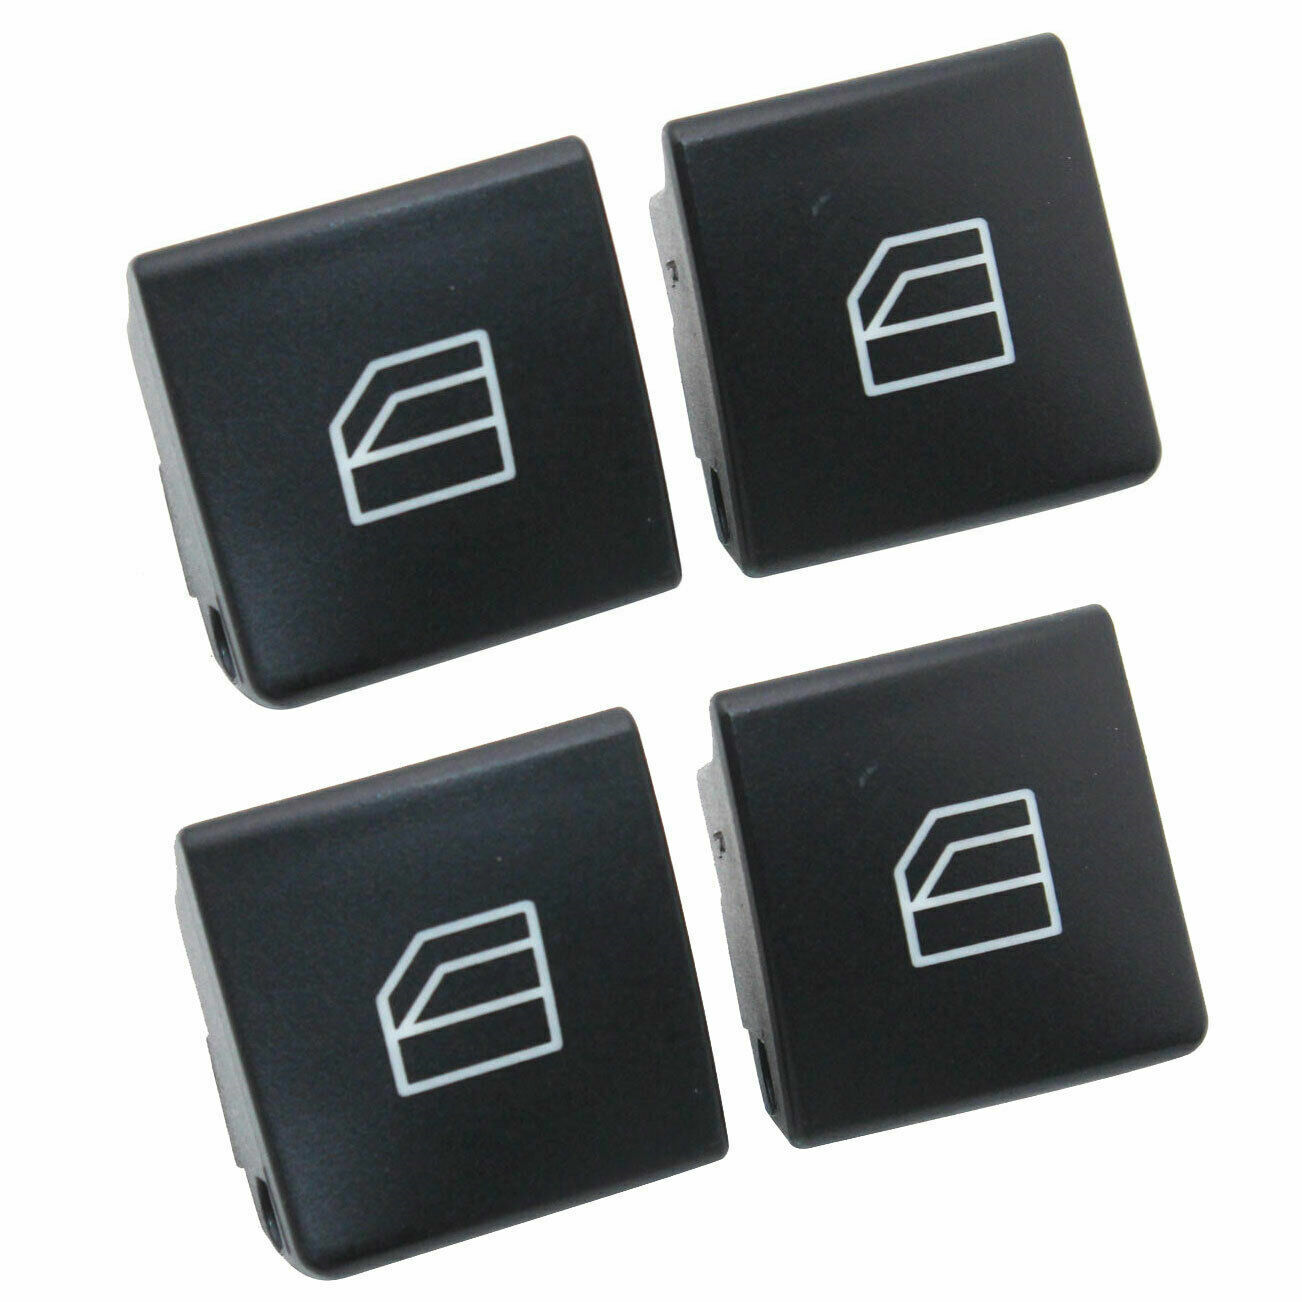 Master Window Switch Button Cover Cap For Benz C200 C220 E200 CLA GLK ML350 W204